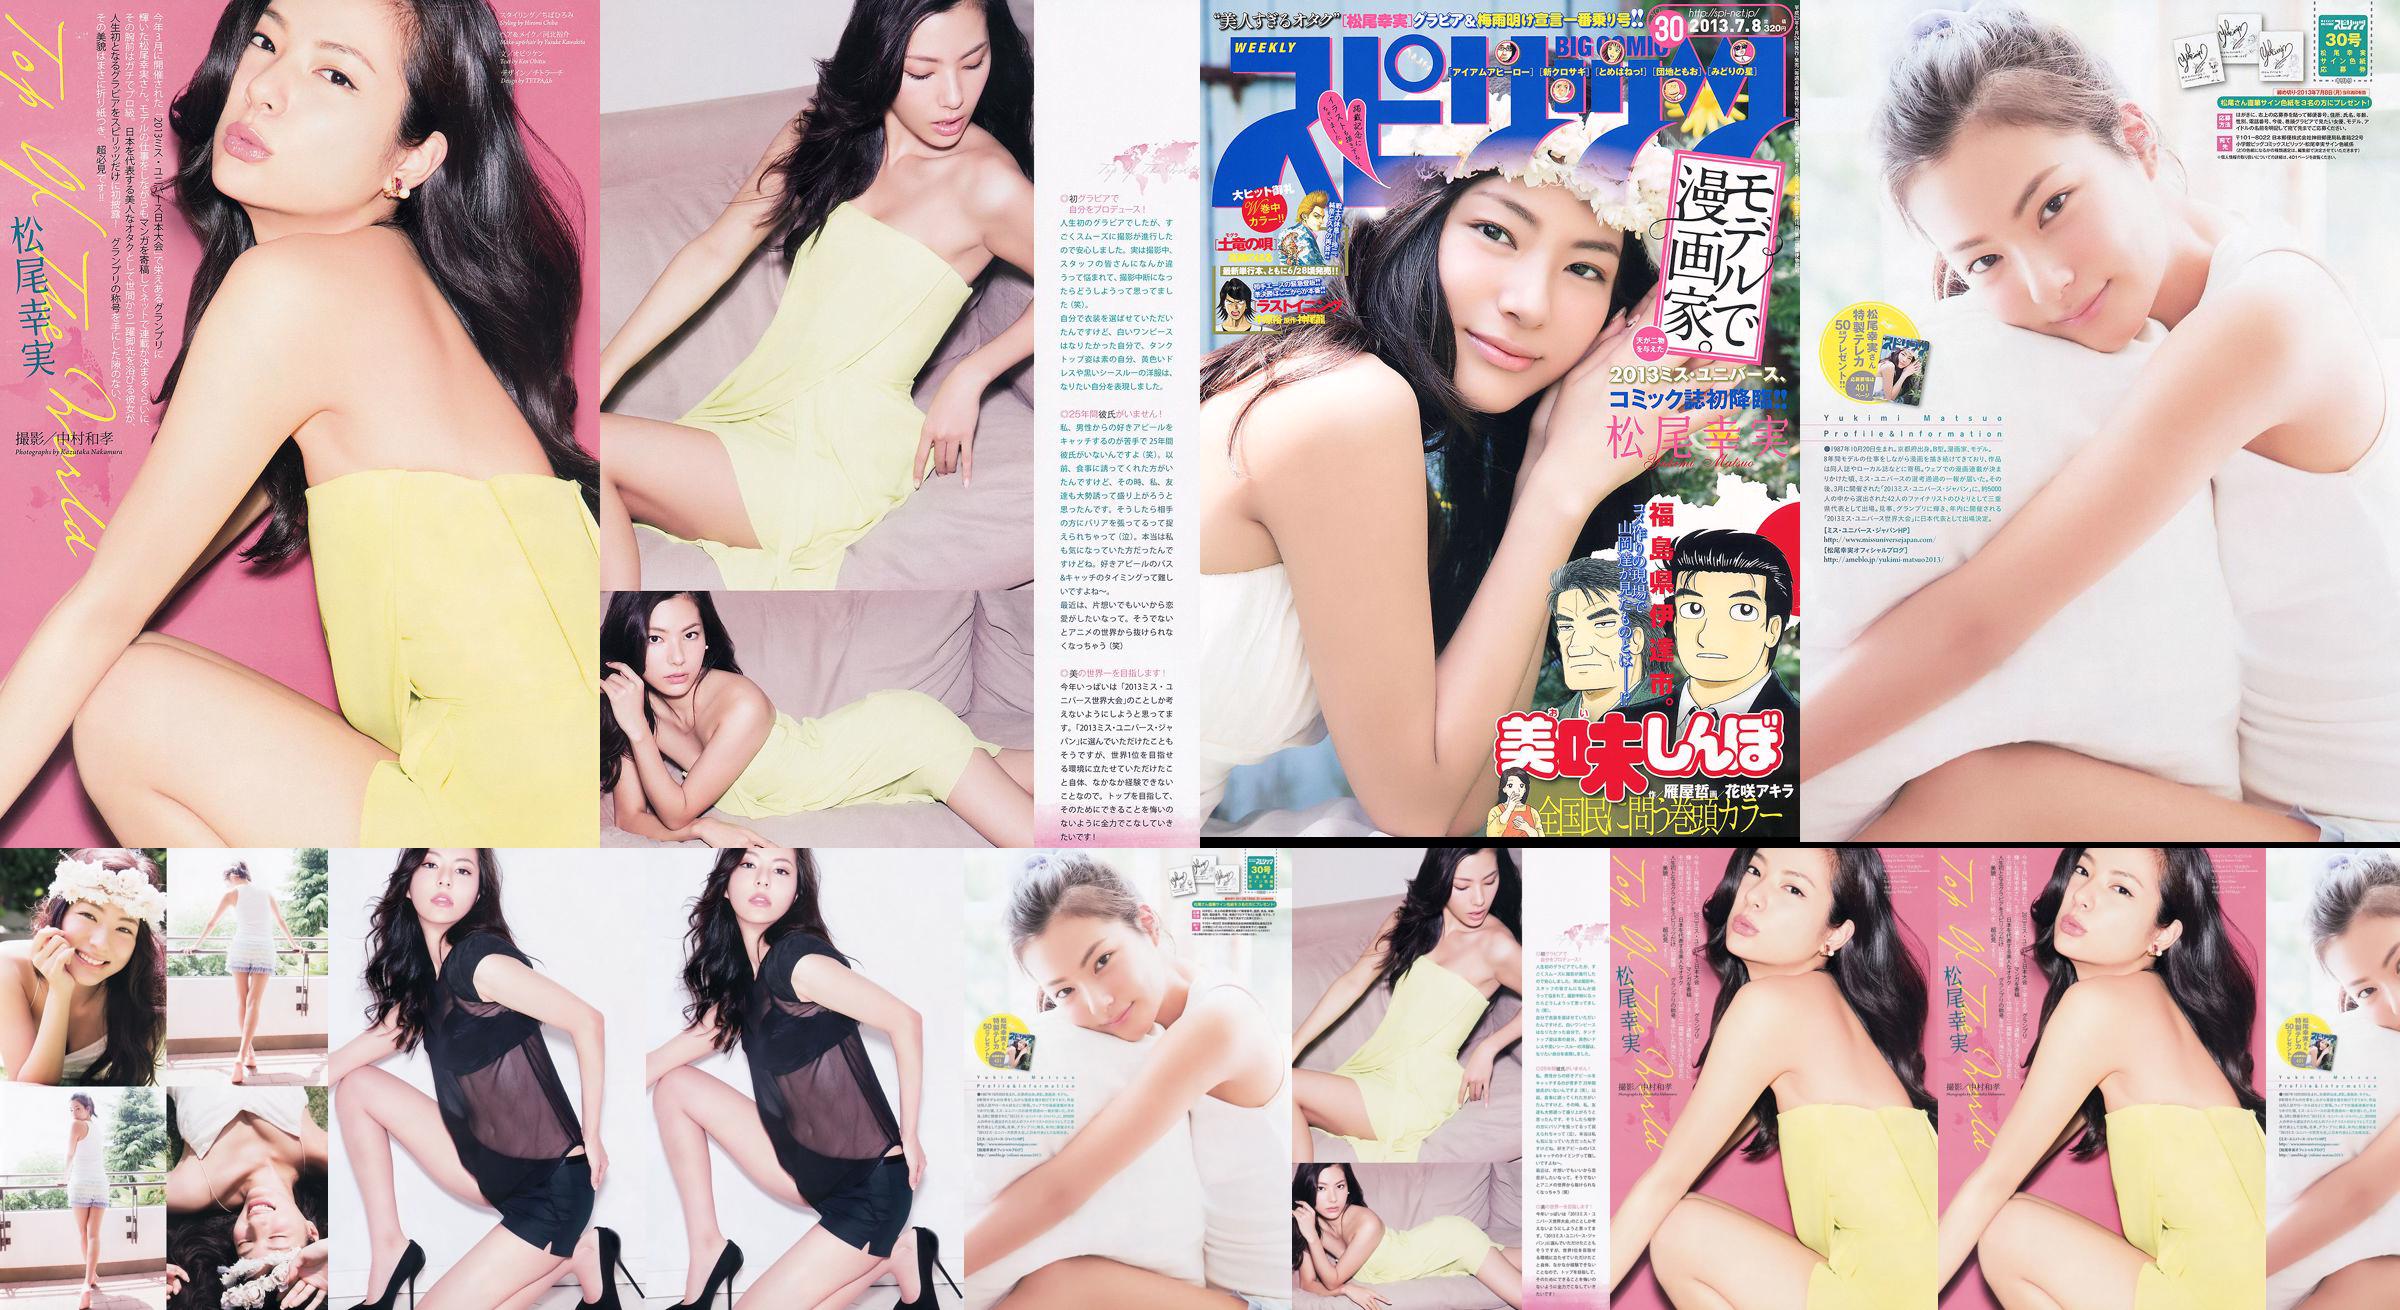 [Weekly Big Comic Spirits] Komi Matsuo 2013 No.30 Photo Magazine No.ef324a หน้า 2